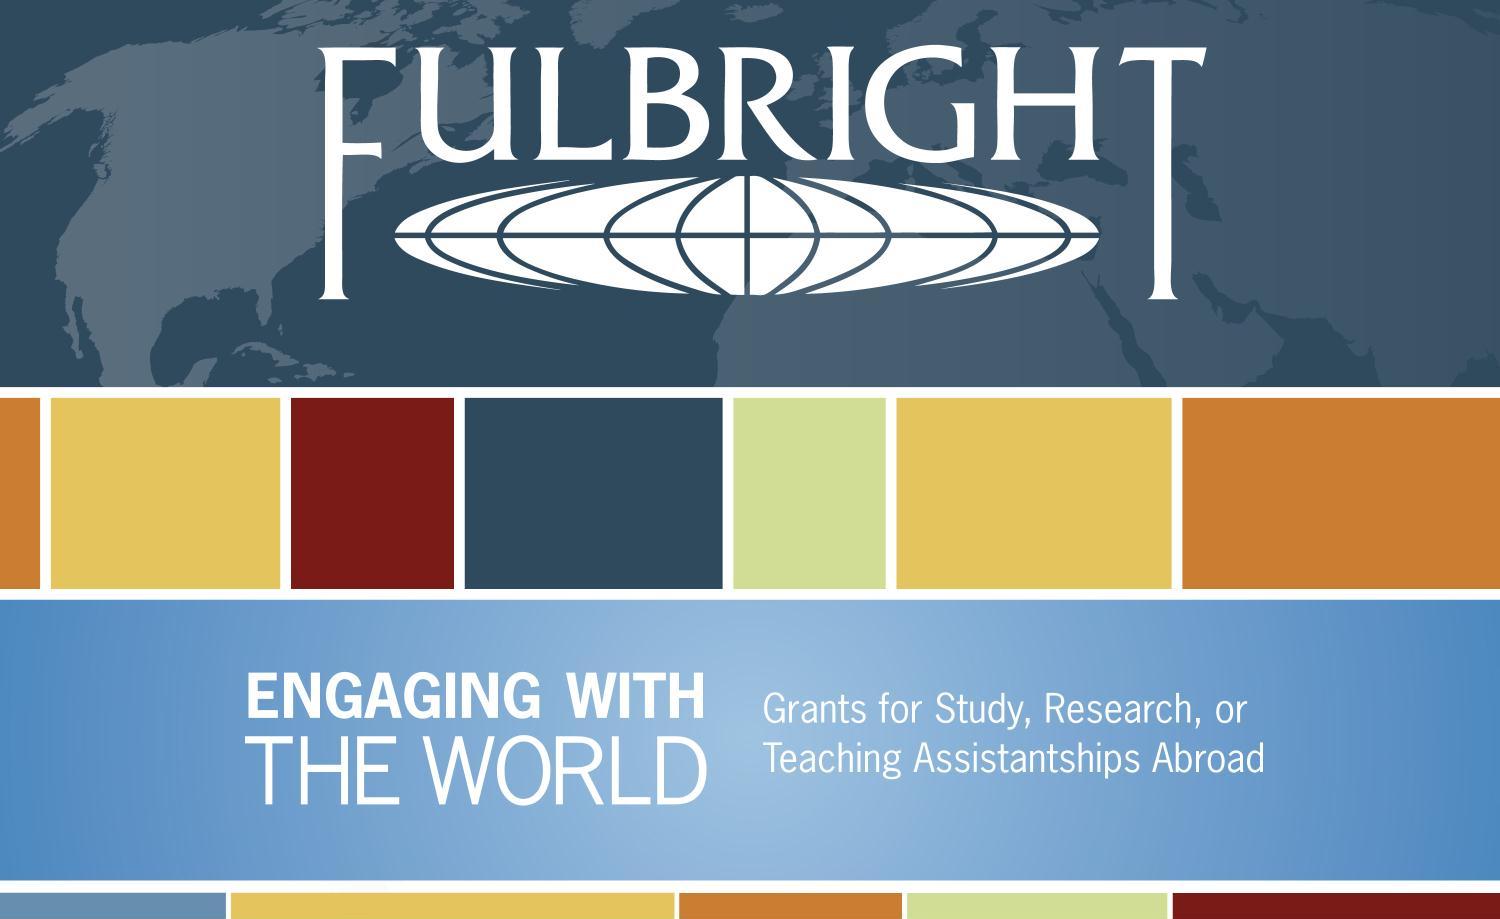 Học bổng FullBright là gì?